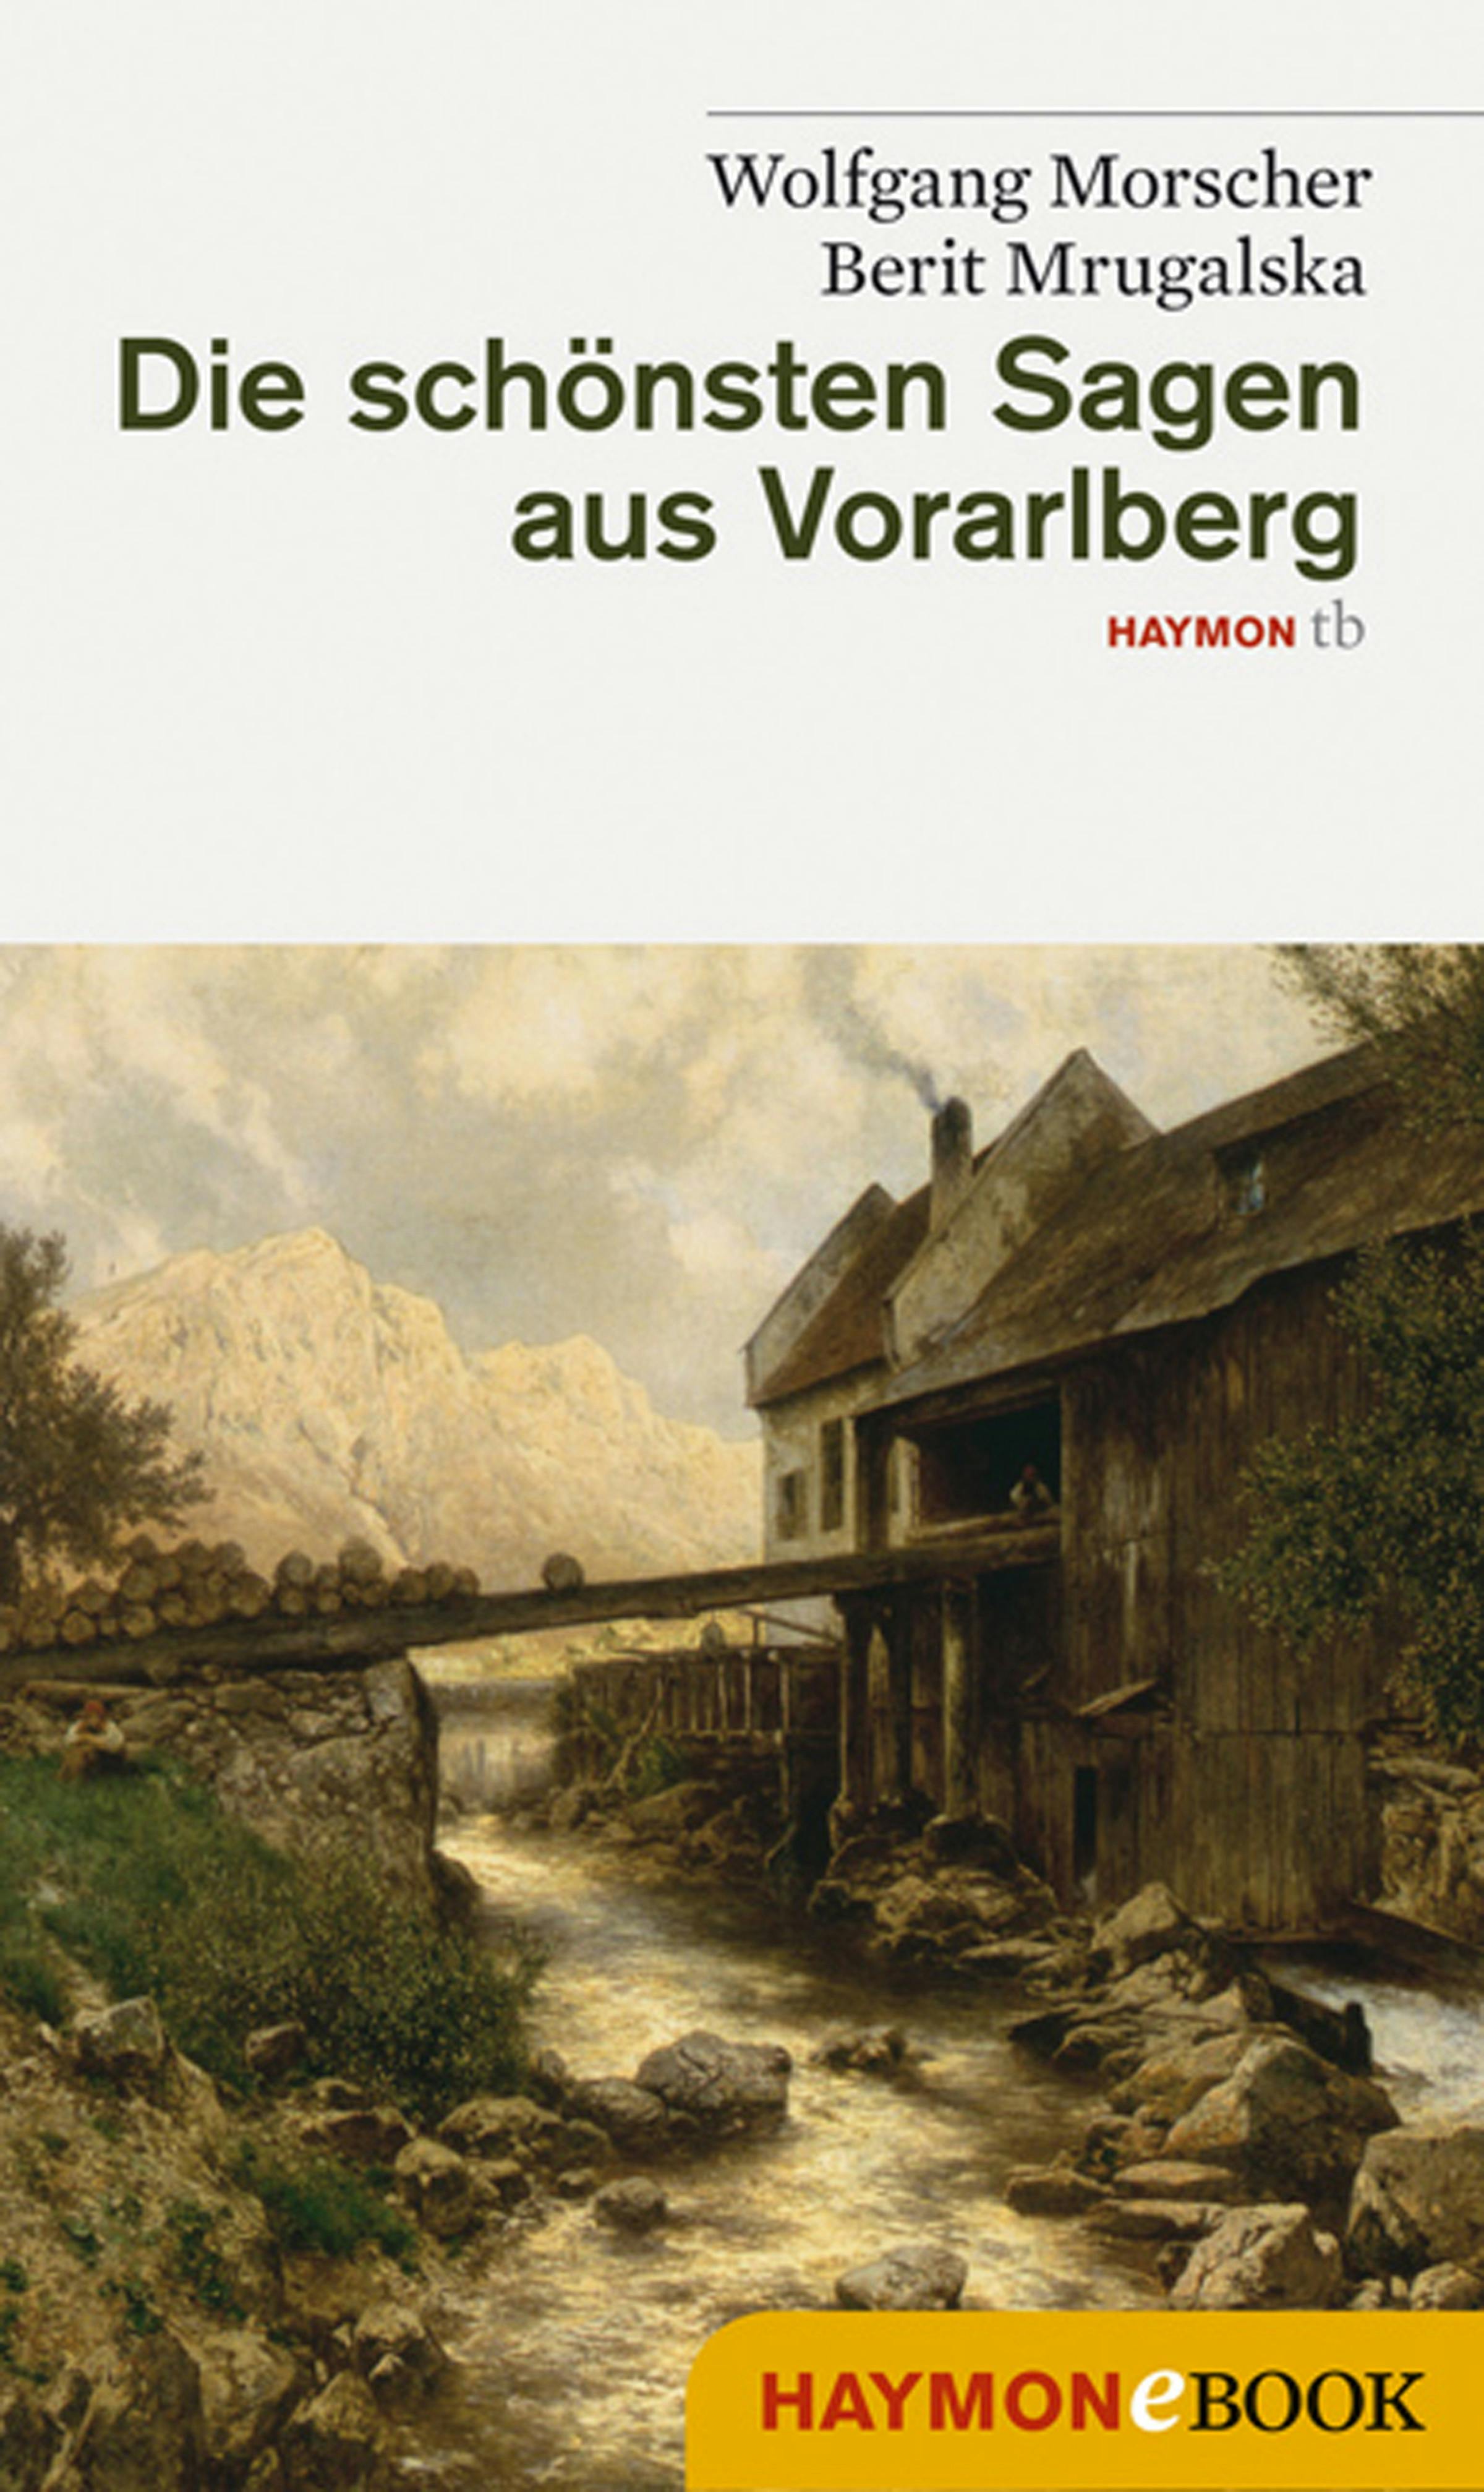 Die schönsten Sagen aus Vorarlberg - Wolfgang Morscher, Berit Mrugalska